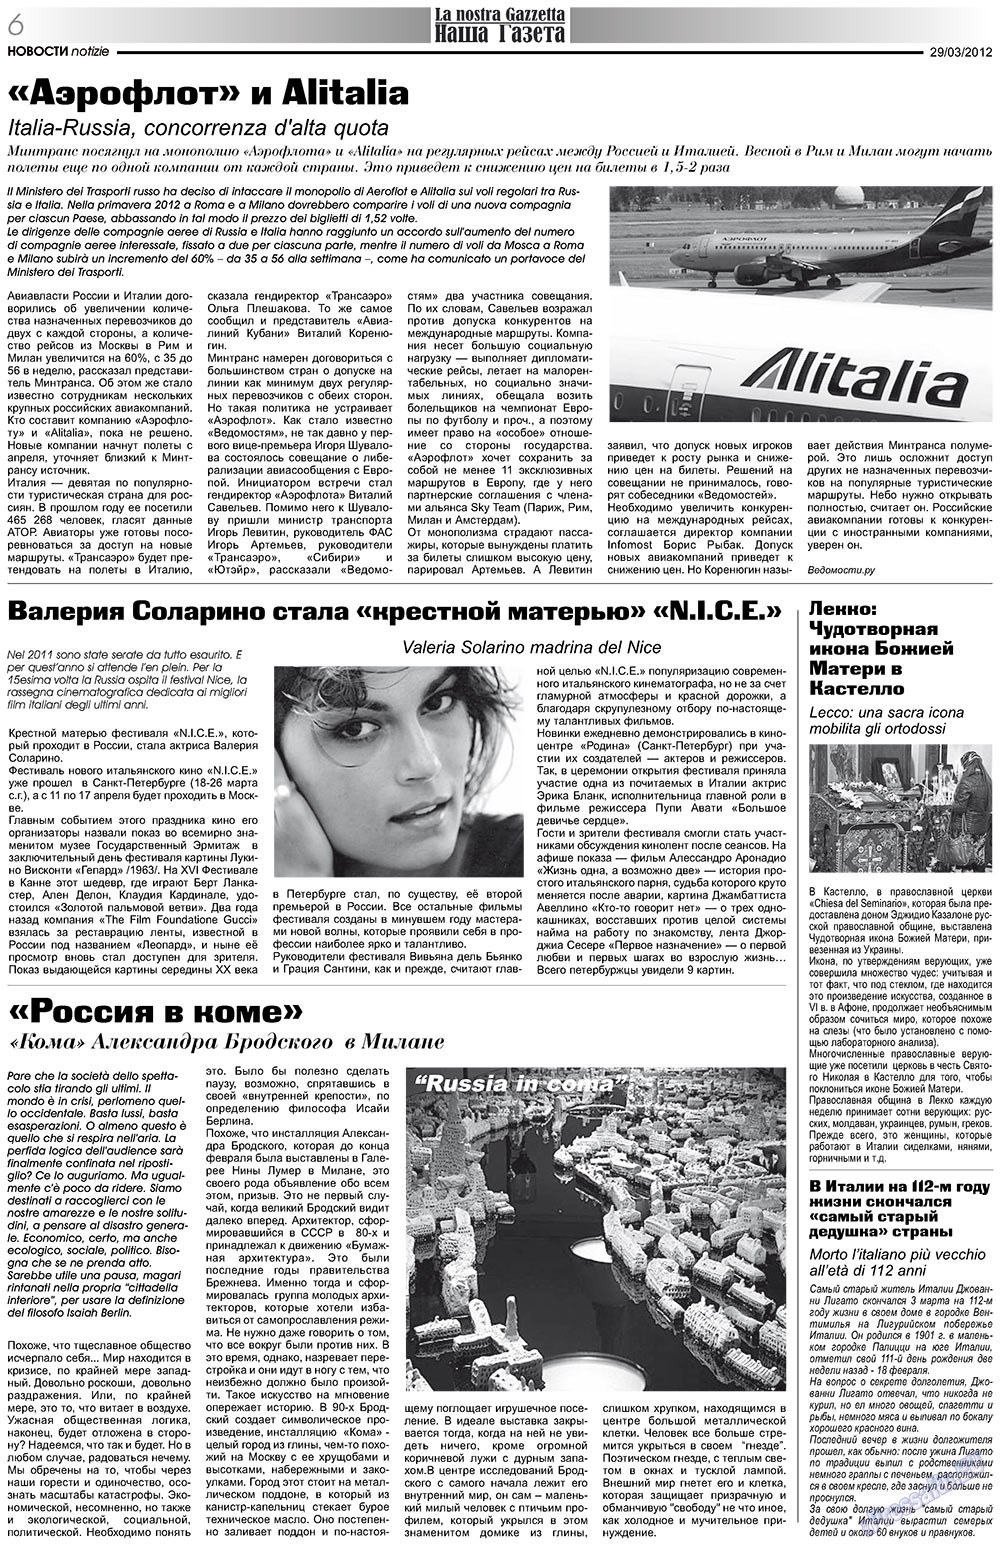 Наша Газета Италия, газета. 2012 №153 стр.6